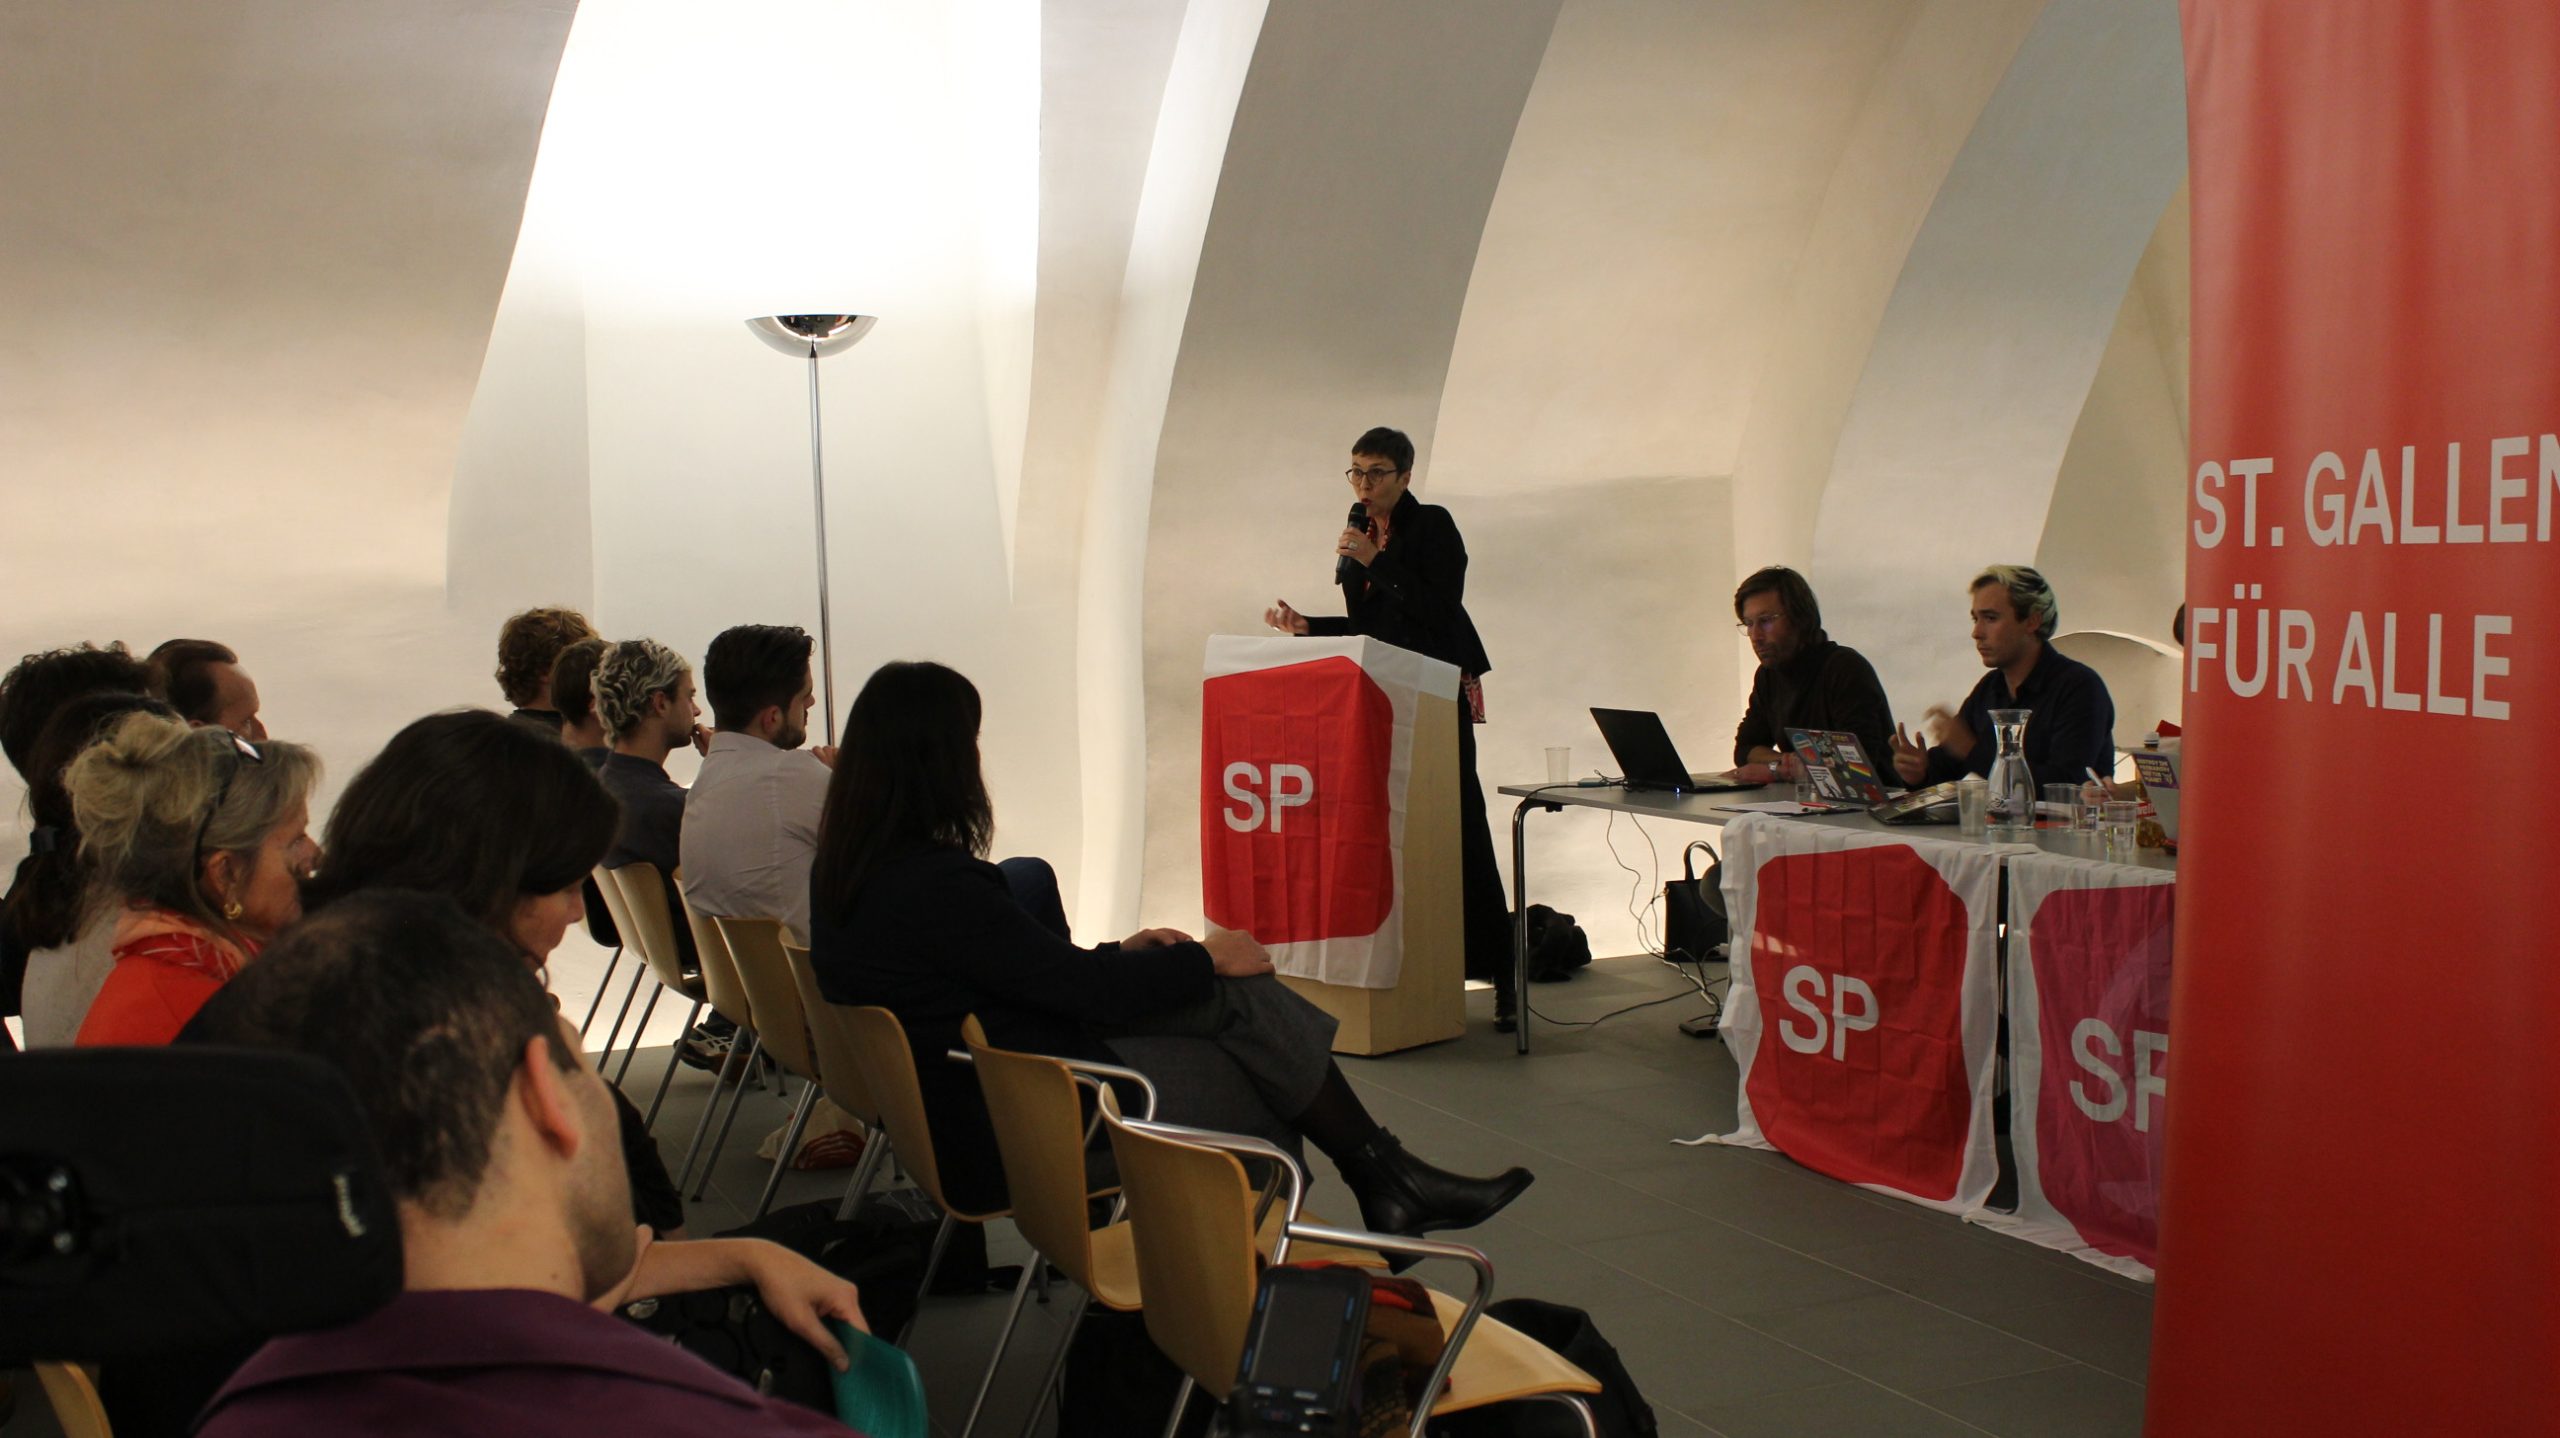 Löhne, Versorgung, Zukunft sichern – meine Ständeratskandidatur für das soziale und ökologische St. Gallen